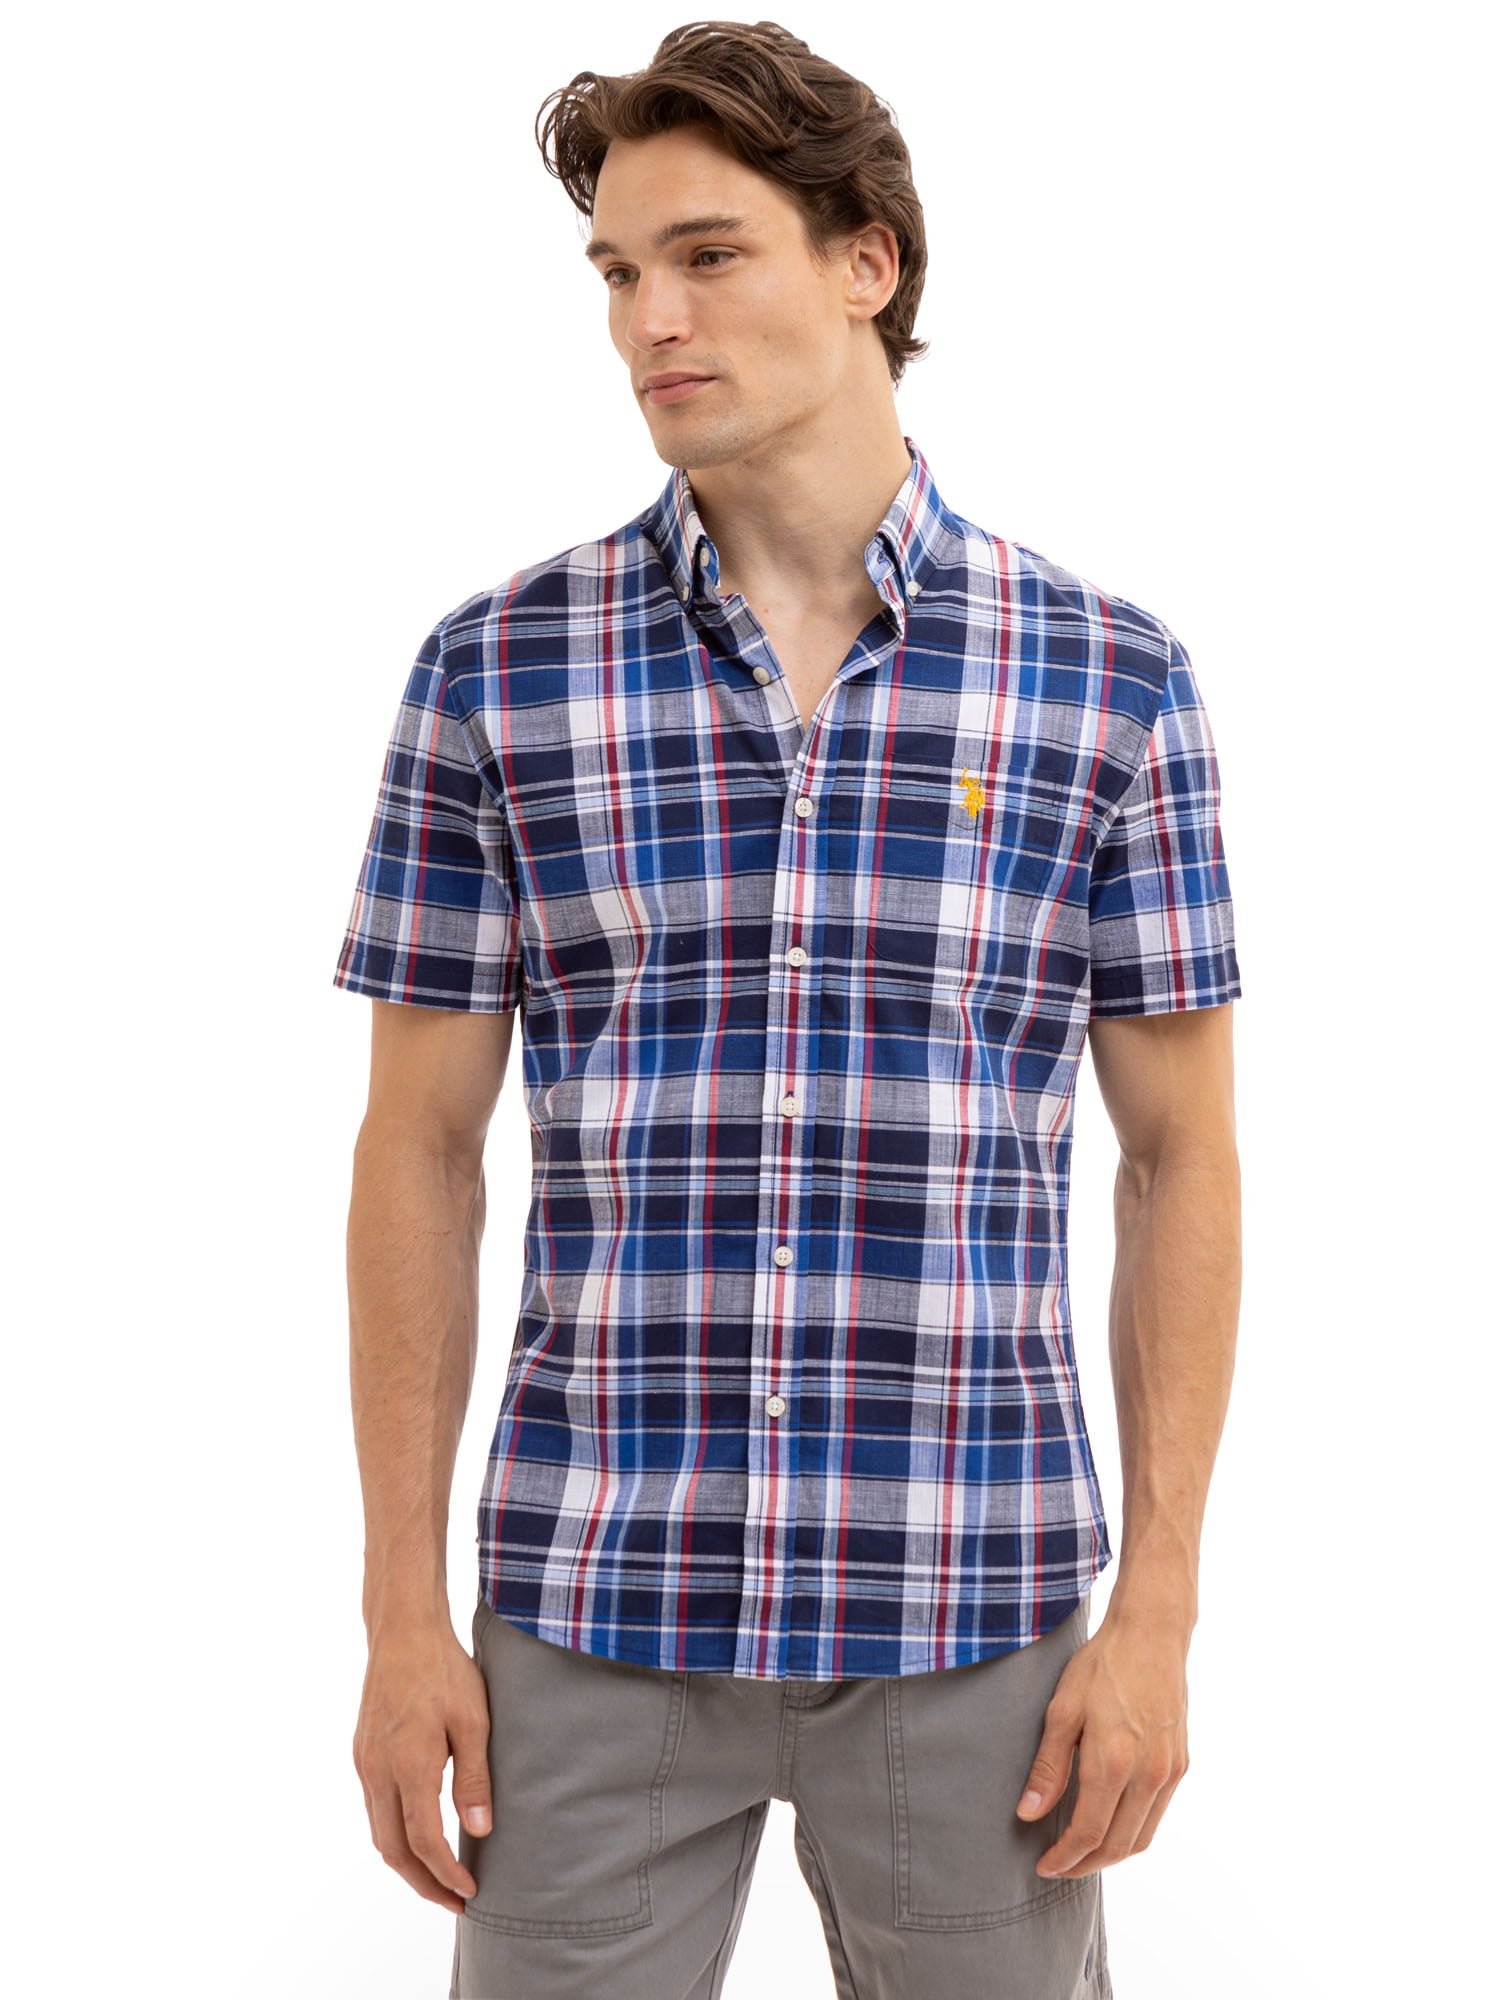 U.S. Polo Assn. Men's Short Sleeve Woven Shirt - Walmart.com